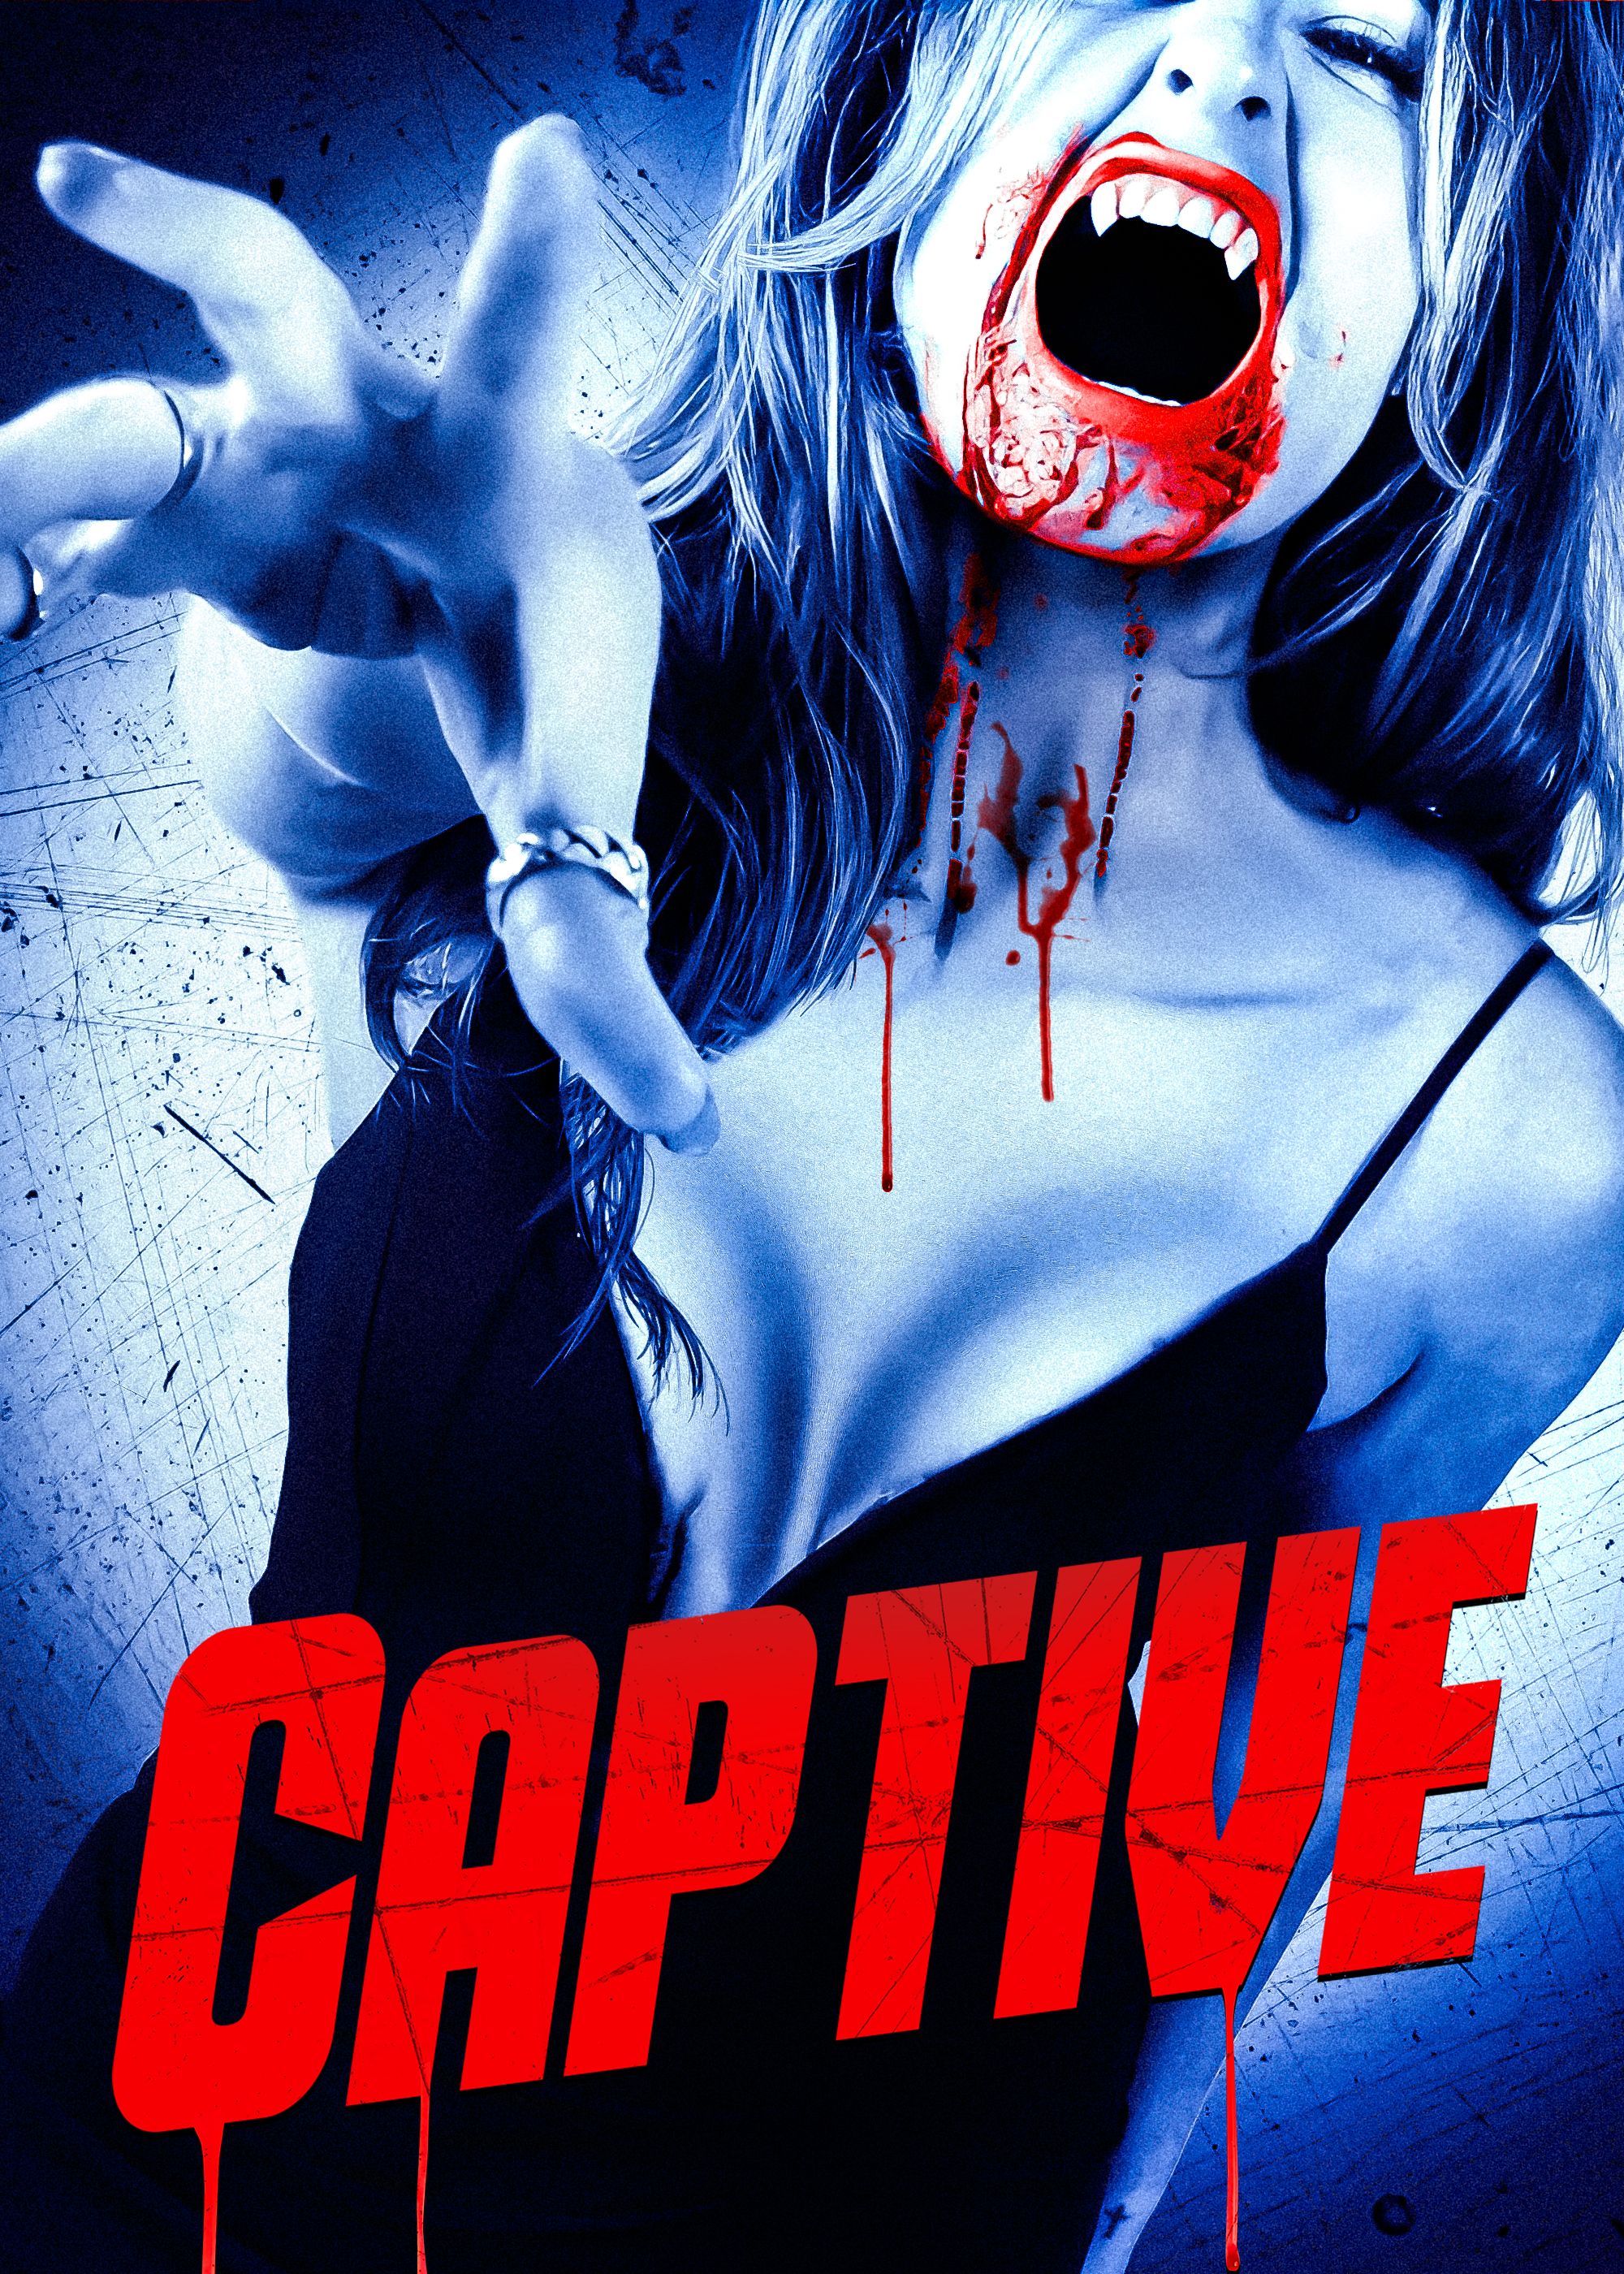 The Captive - Movies - Watch free - Rakuten TV